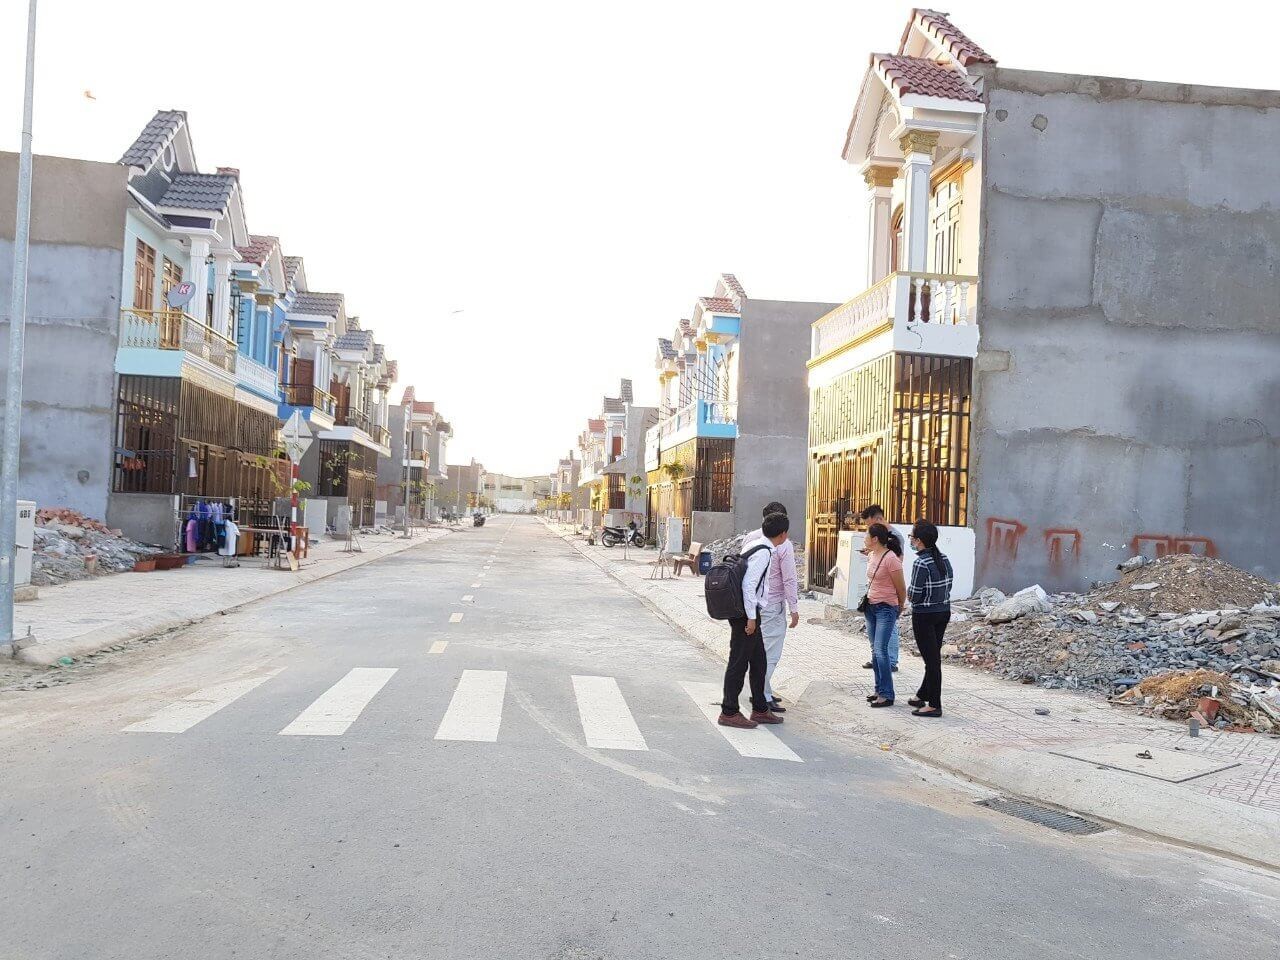 
Giá đất khu vực thành phố Thuận An (Bình Dương) đang tăng từng ngày
